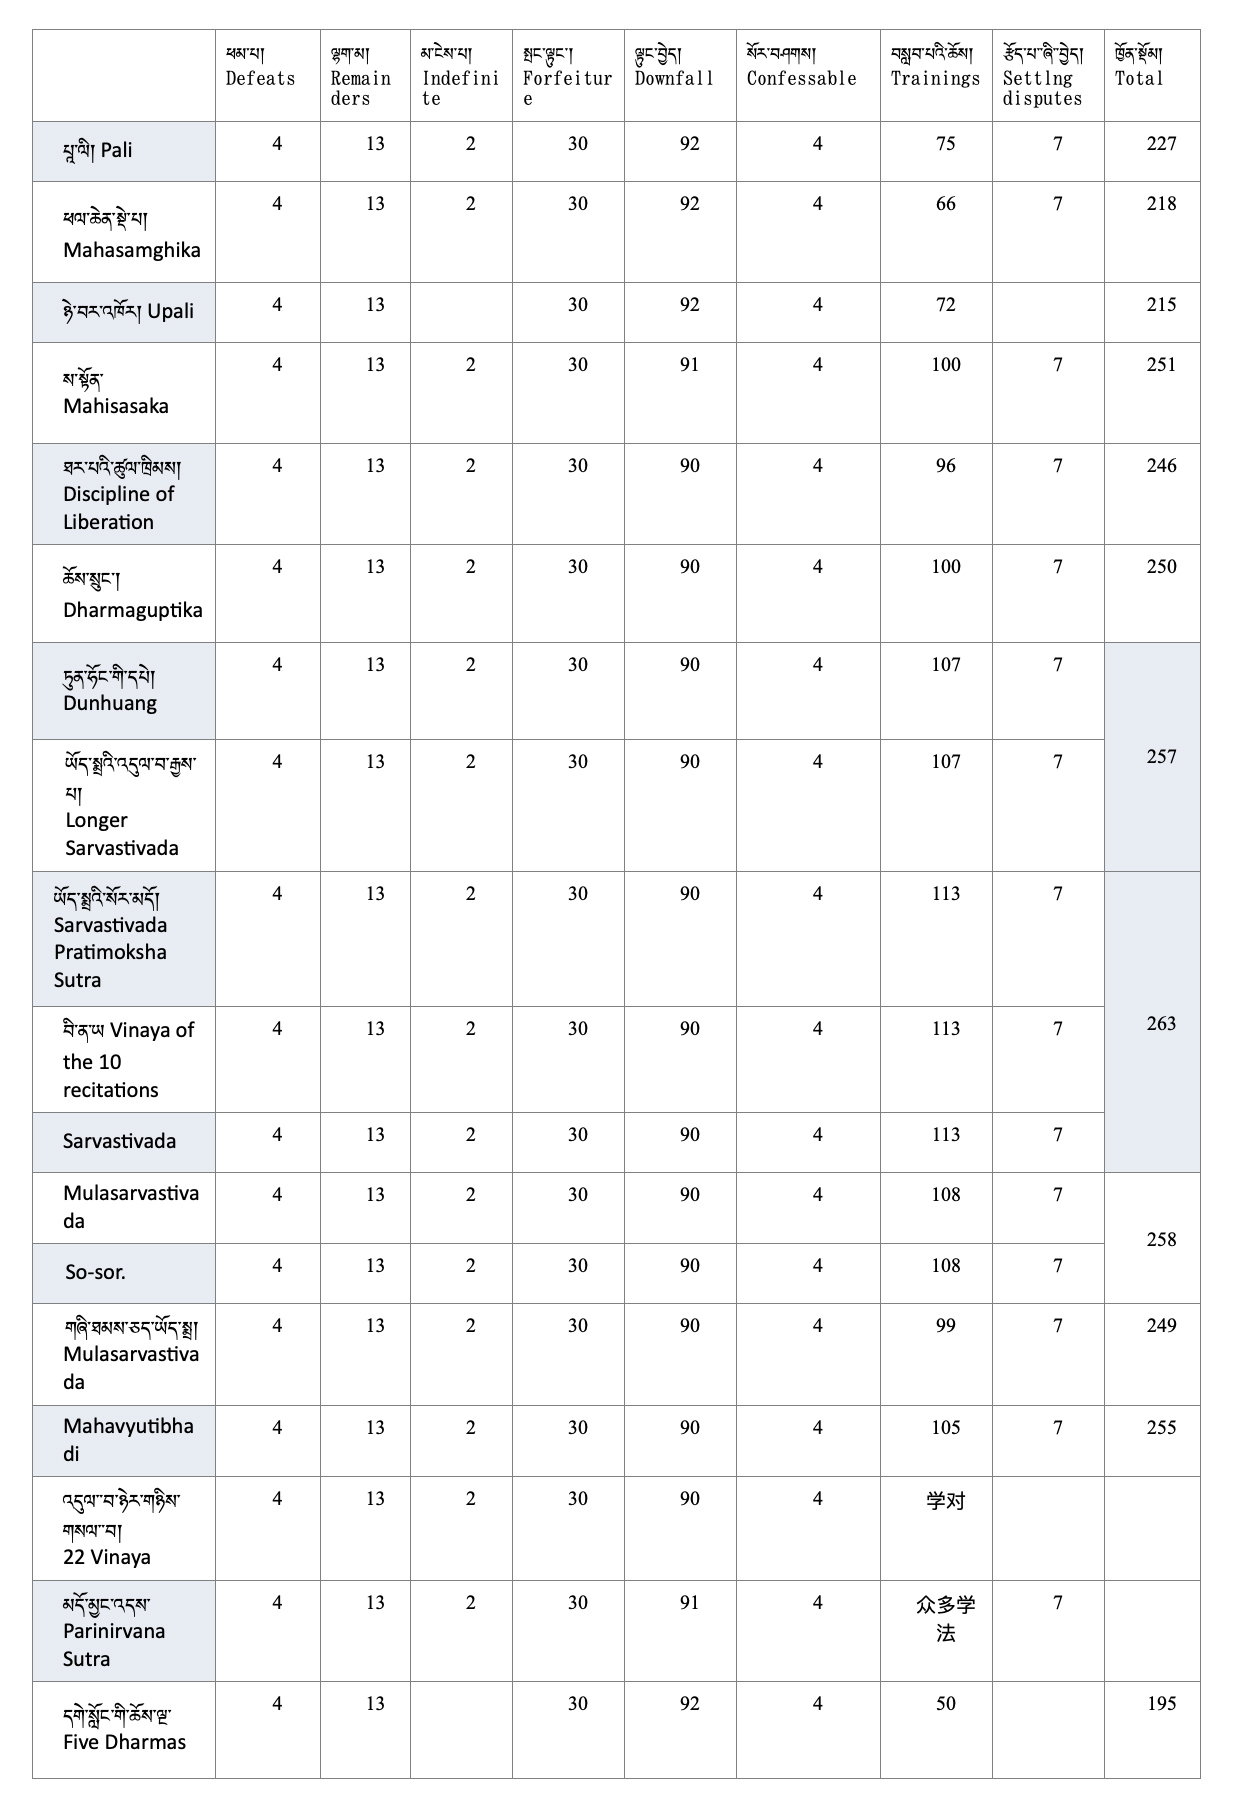 vinaya comparison chart